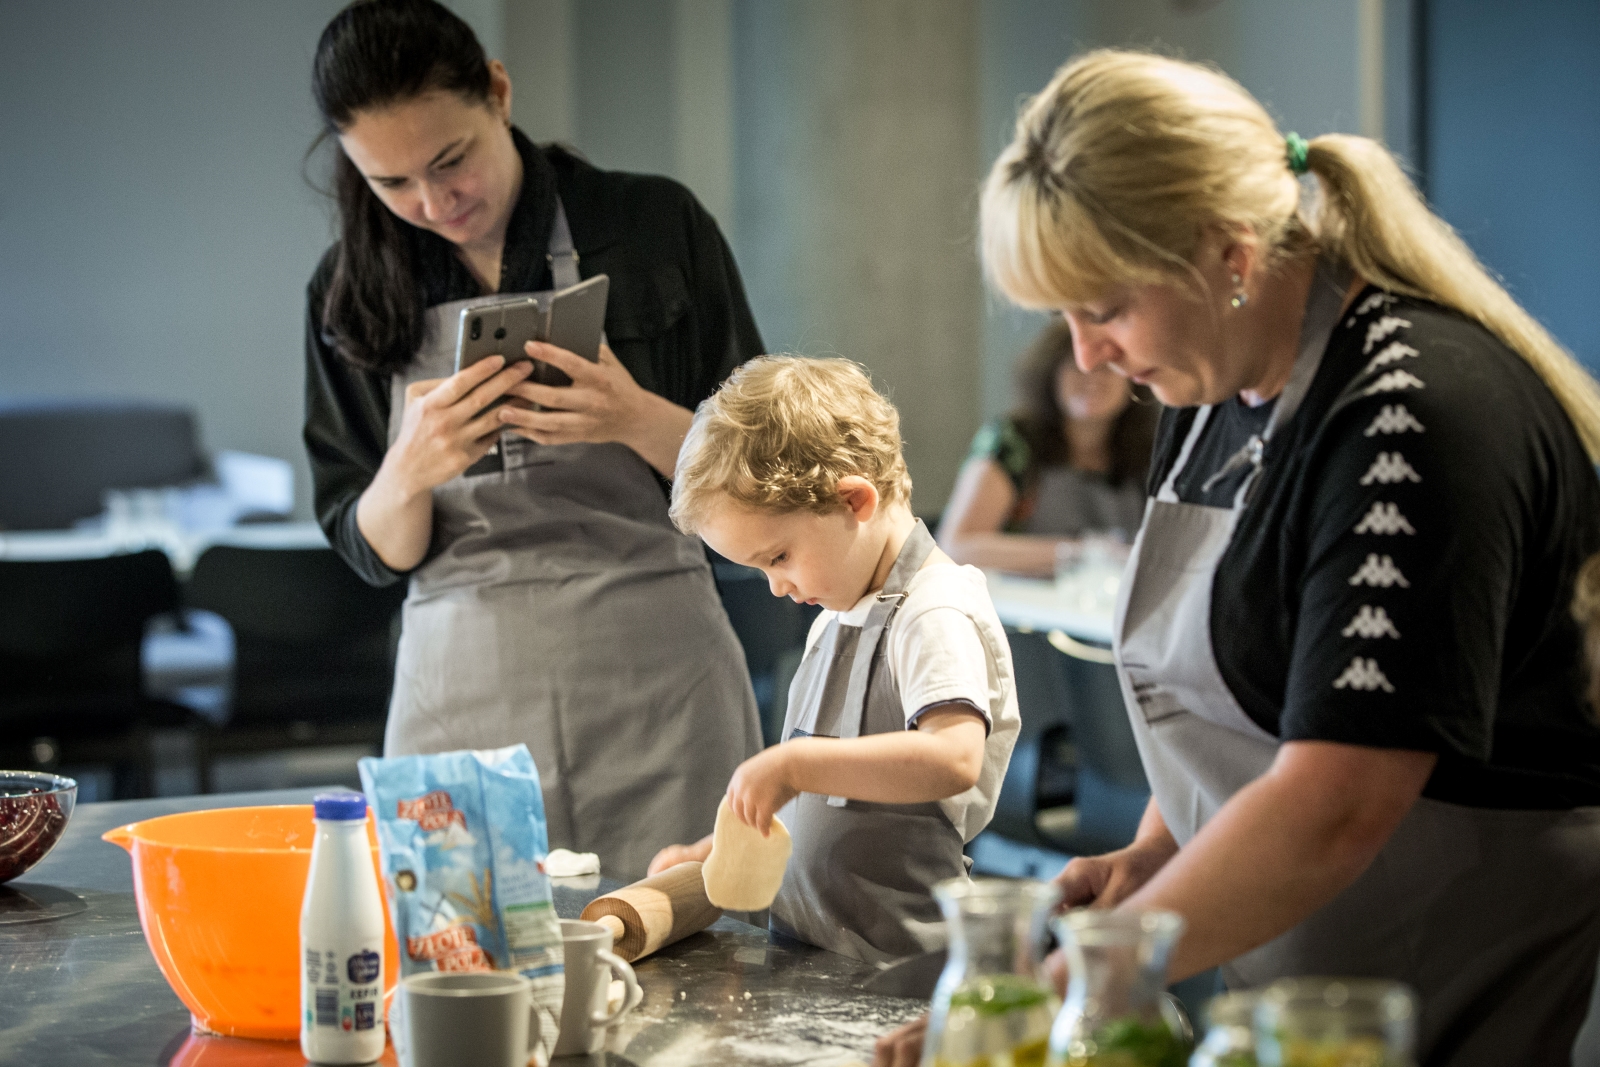 Dziecko i kobieta przygotowują jedzenie podczas warsztatów kulinarnych. Z boku stoi druga kobieta, która fotografuje dziecko.